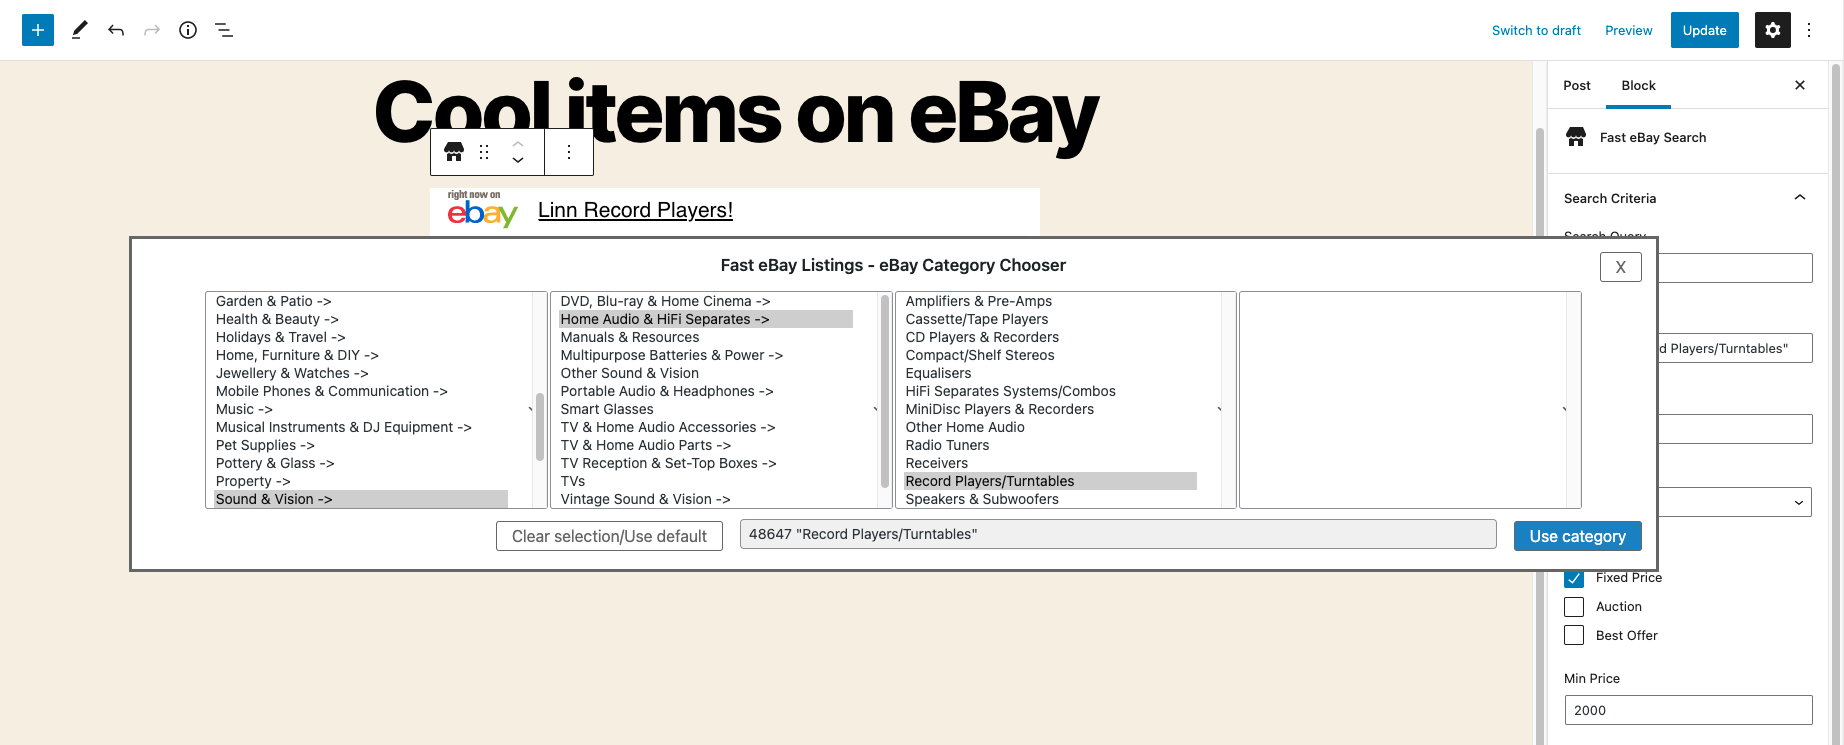 Fast eBay Listings - category chooser